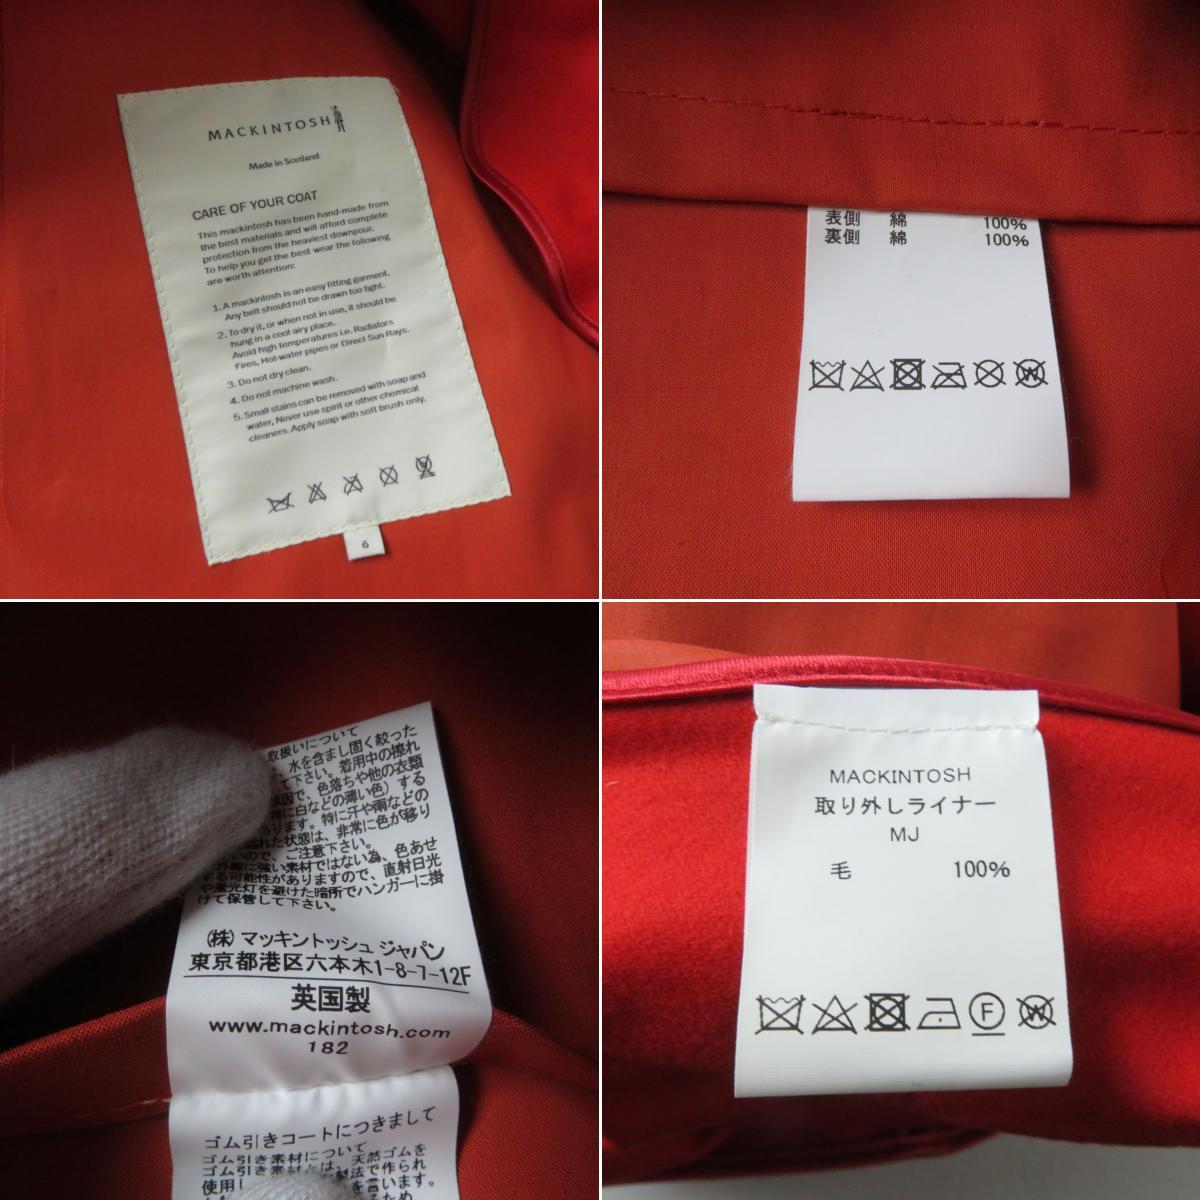  не использовался товар * стандартный товар Macintosh RO4095 подкладка есть резина скидка пальто / пальто с отложным воротником orange 6 вешалка *ga- men to* с биркой 